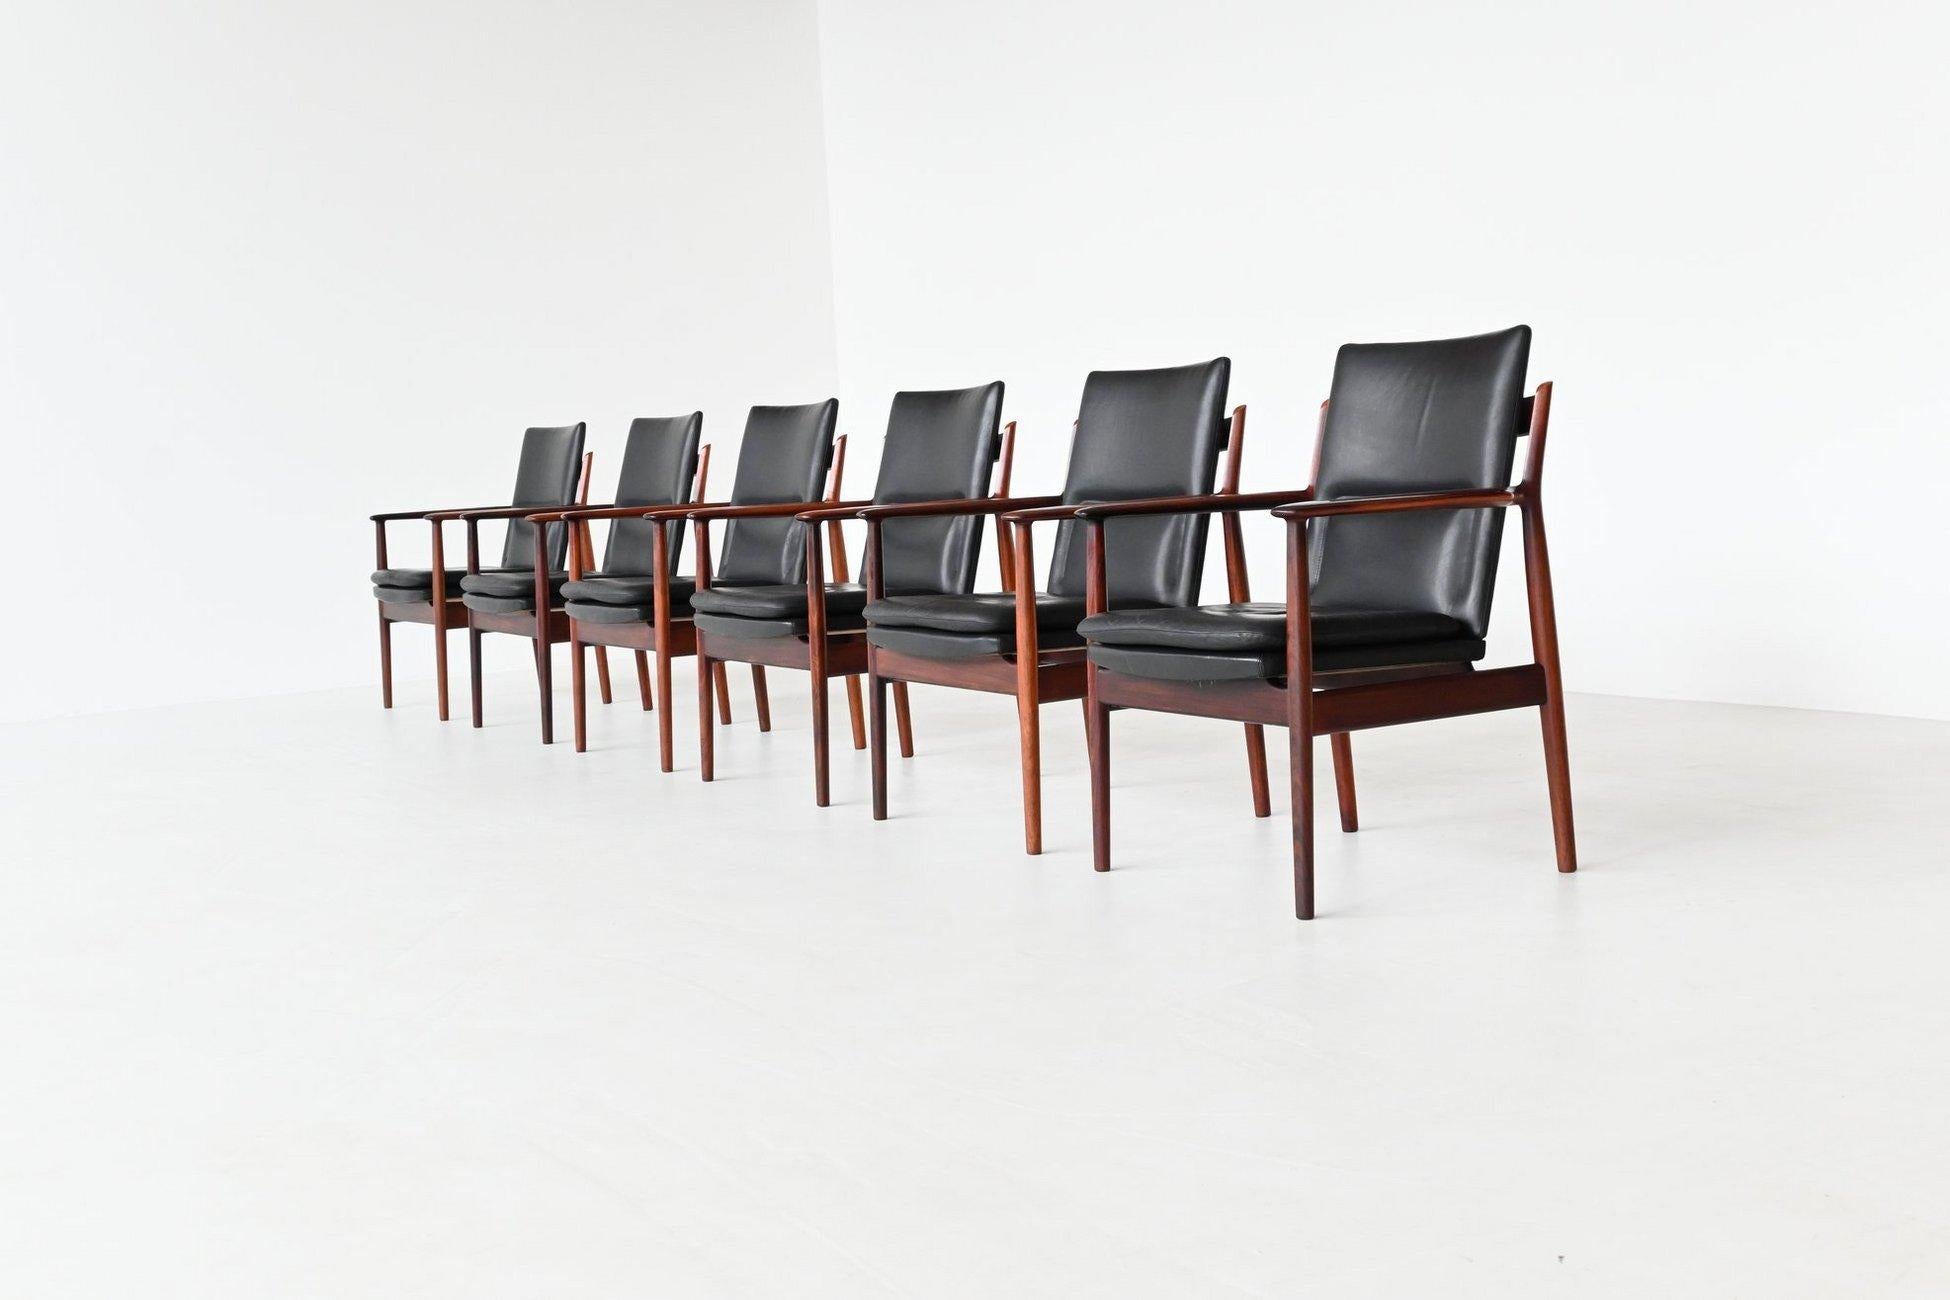 Schöner und seltener Satz von sechs Sesseln Modell 432, entworfen von Arne Vodder für Sibast Furniture, Dänemark 1960. Dieser exklusive dänische Designerstuhl hat skulpturale Armlehnen aus Palisanderholz. Der Rahmen aus massivem Palisanderholz und